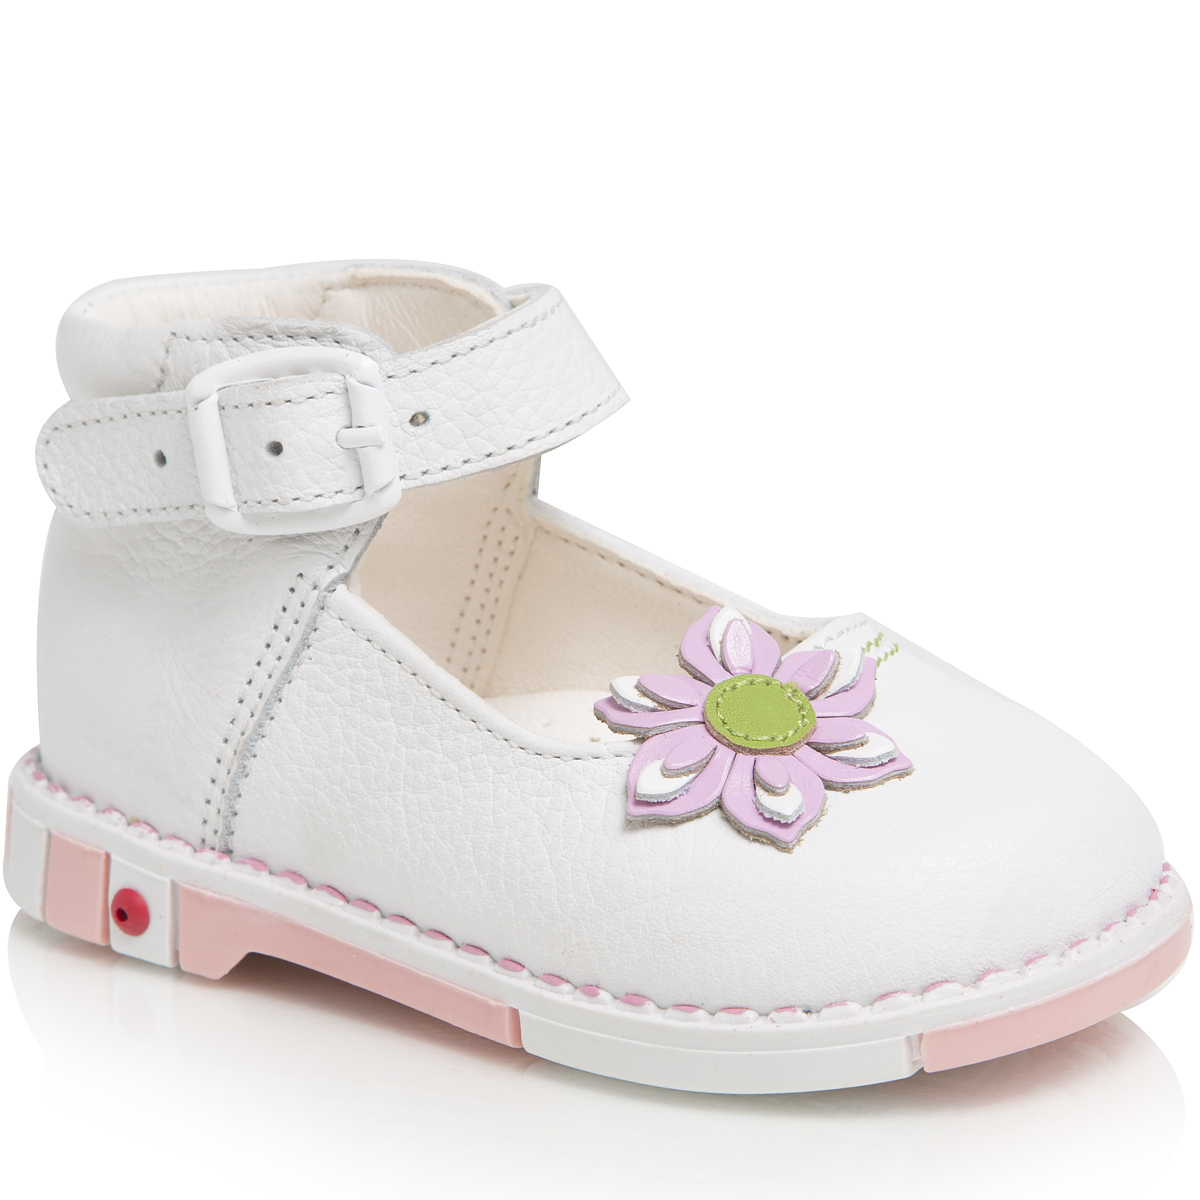 Туфли для девочки Таши Орто, цвет: белый. 211-21. Размер 22